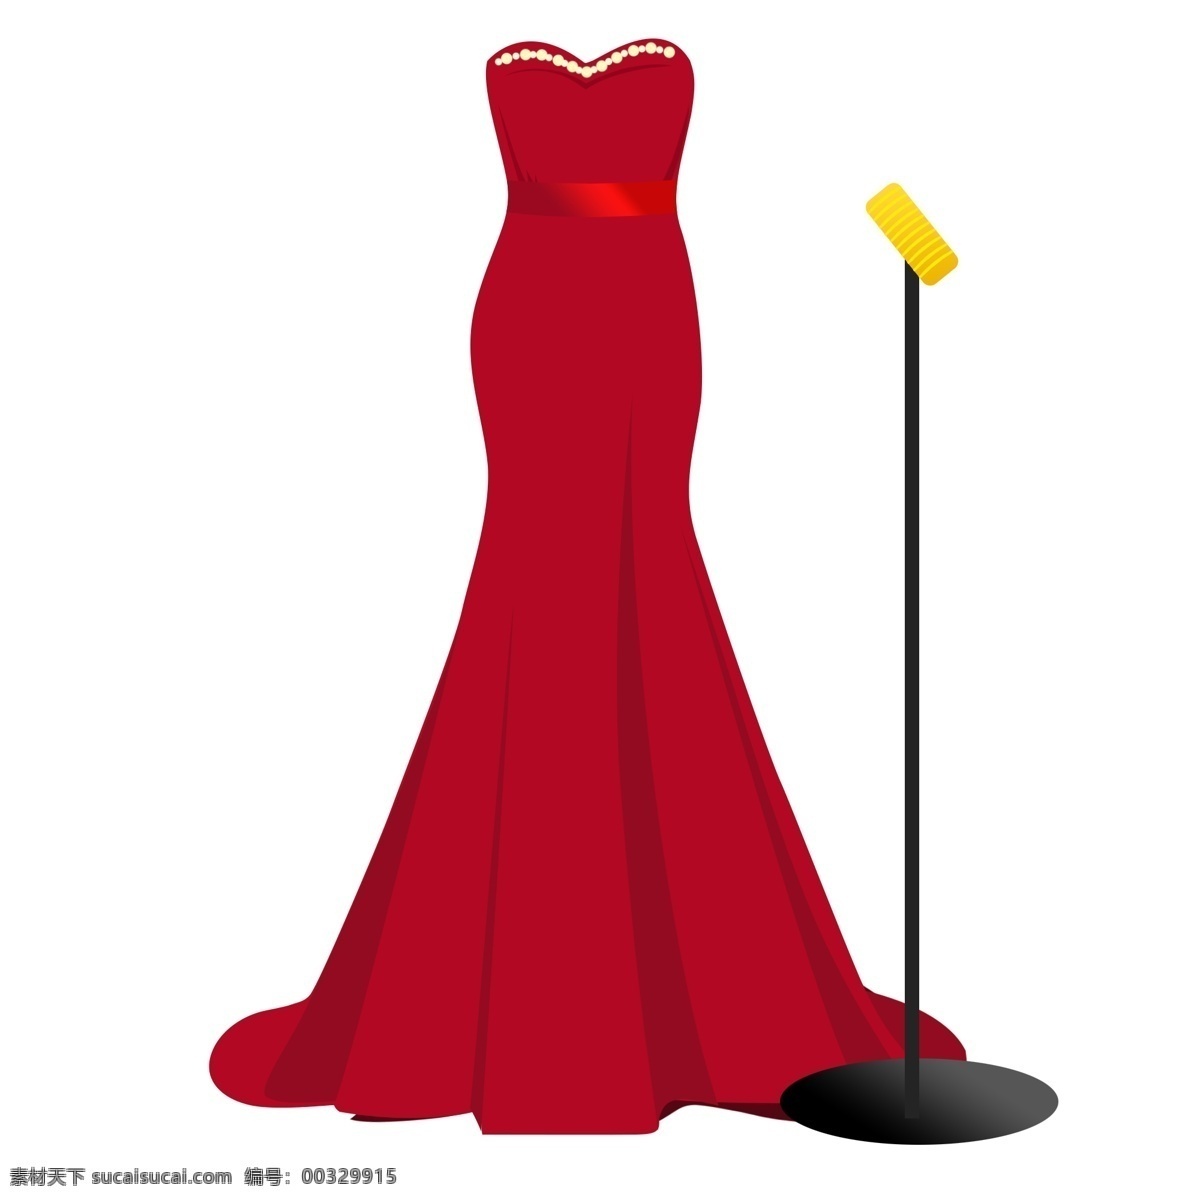 典礼 抹胸 女士 红色 礼服 简单礼服 红色裙子 女士裙子 礼服长裙 长裙红裙 女士红裙 典礼服装 女士长礼服